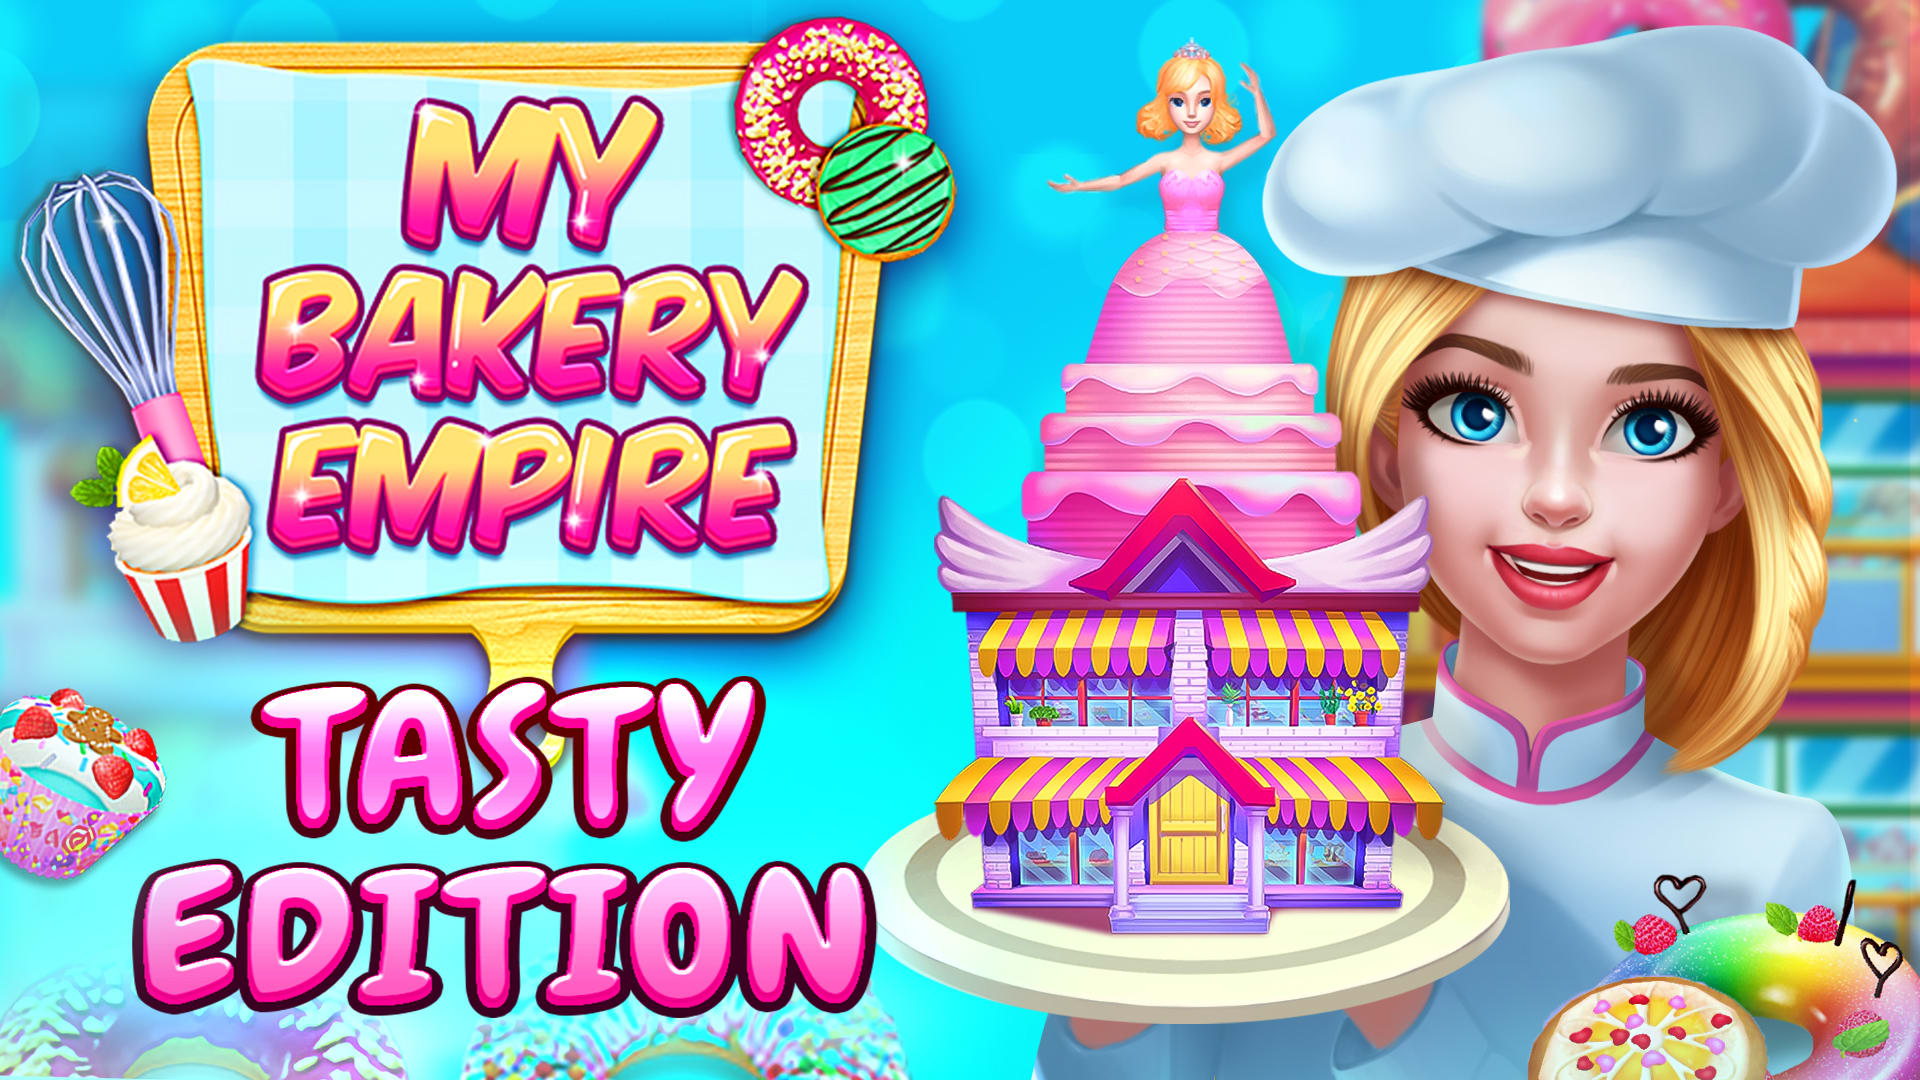 My Bakery Empire: Tasty Edition